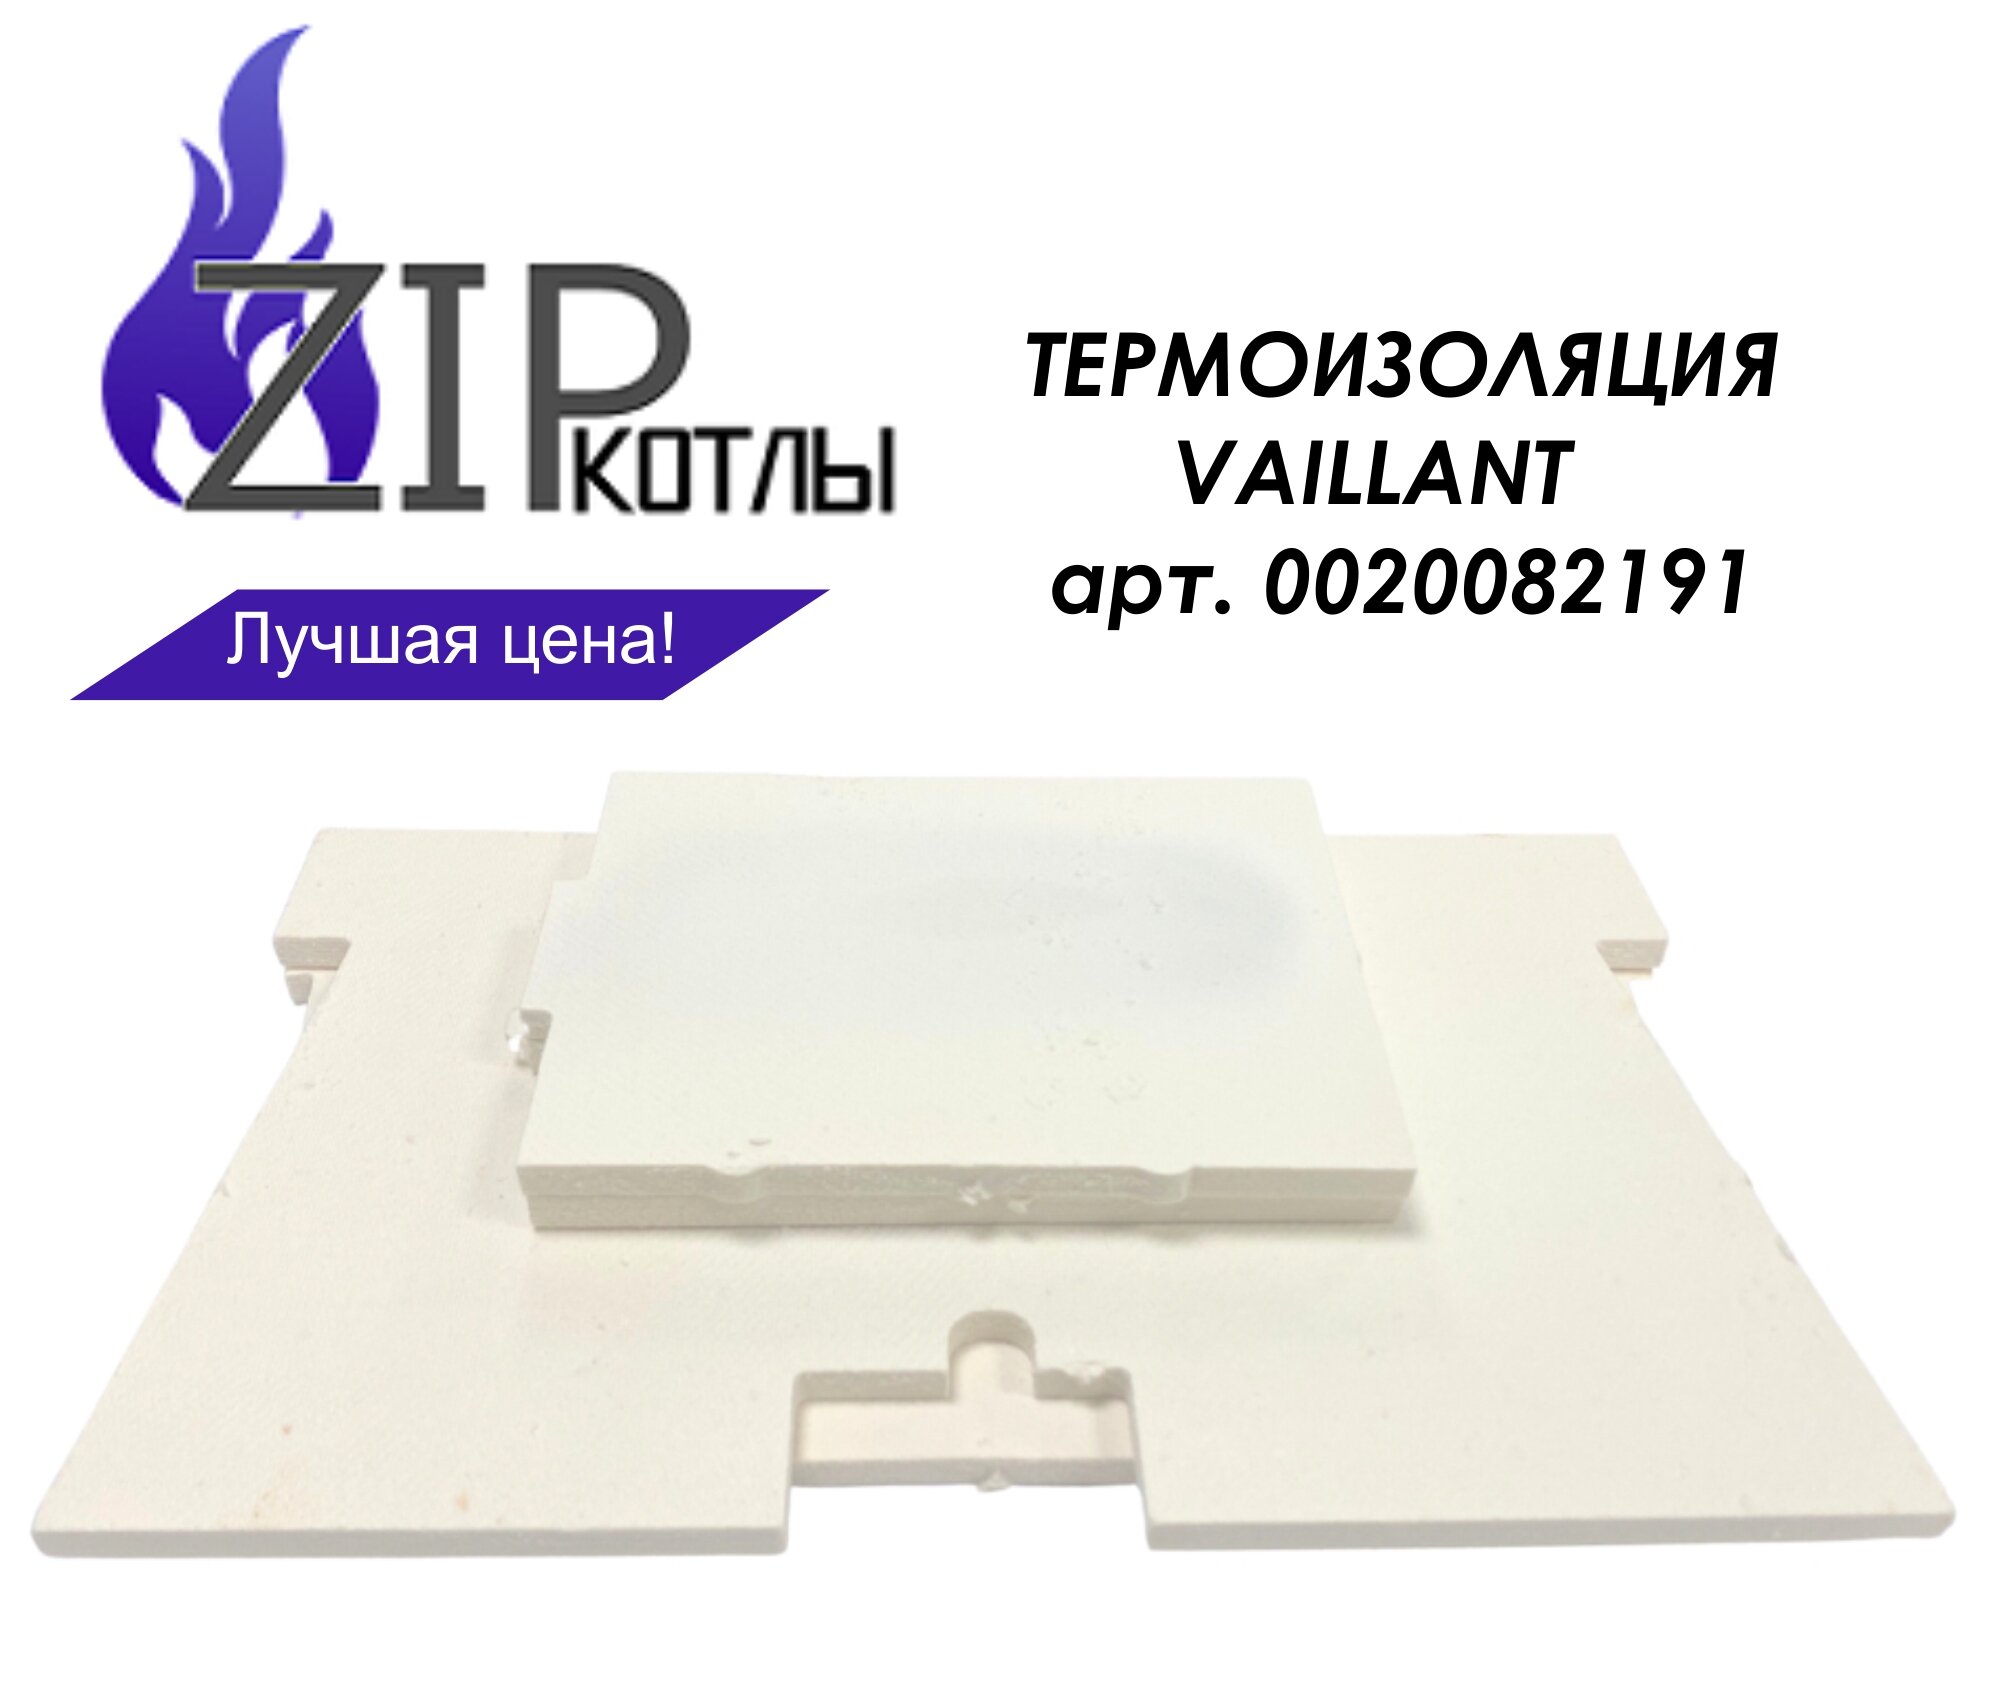 Zip-kotly/ Изоляция горелки для котлов Vaillant комплект толщина 10 мм / Термоизоляция 0020082191